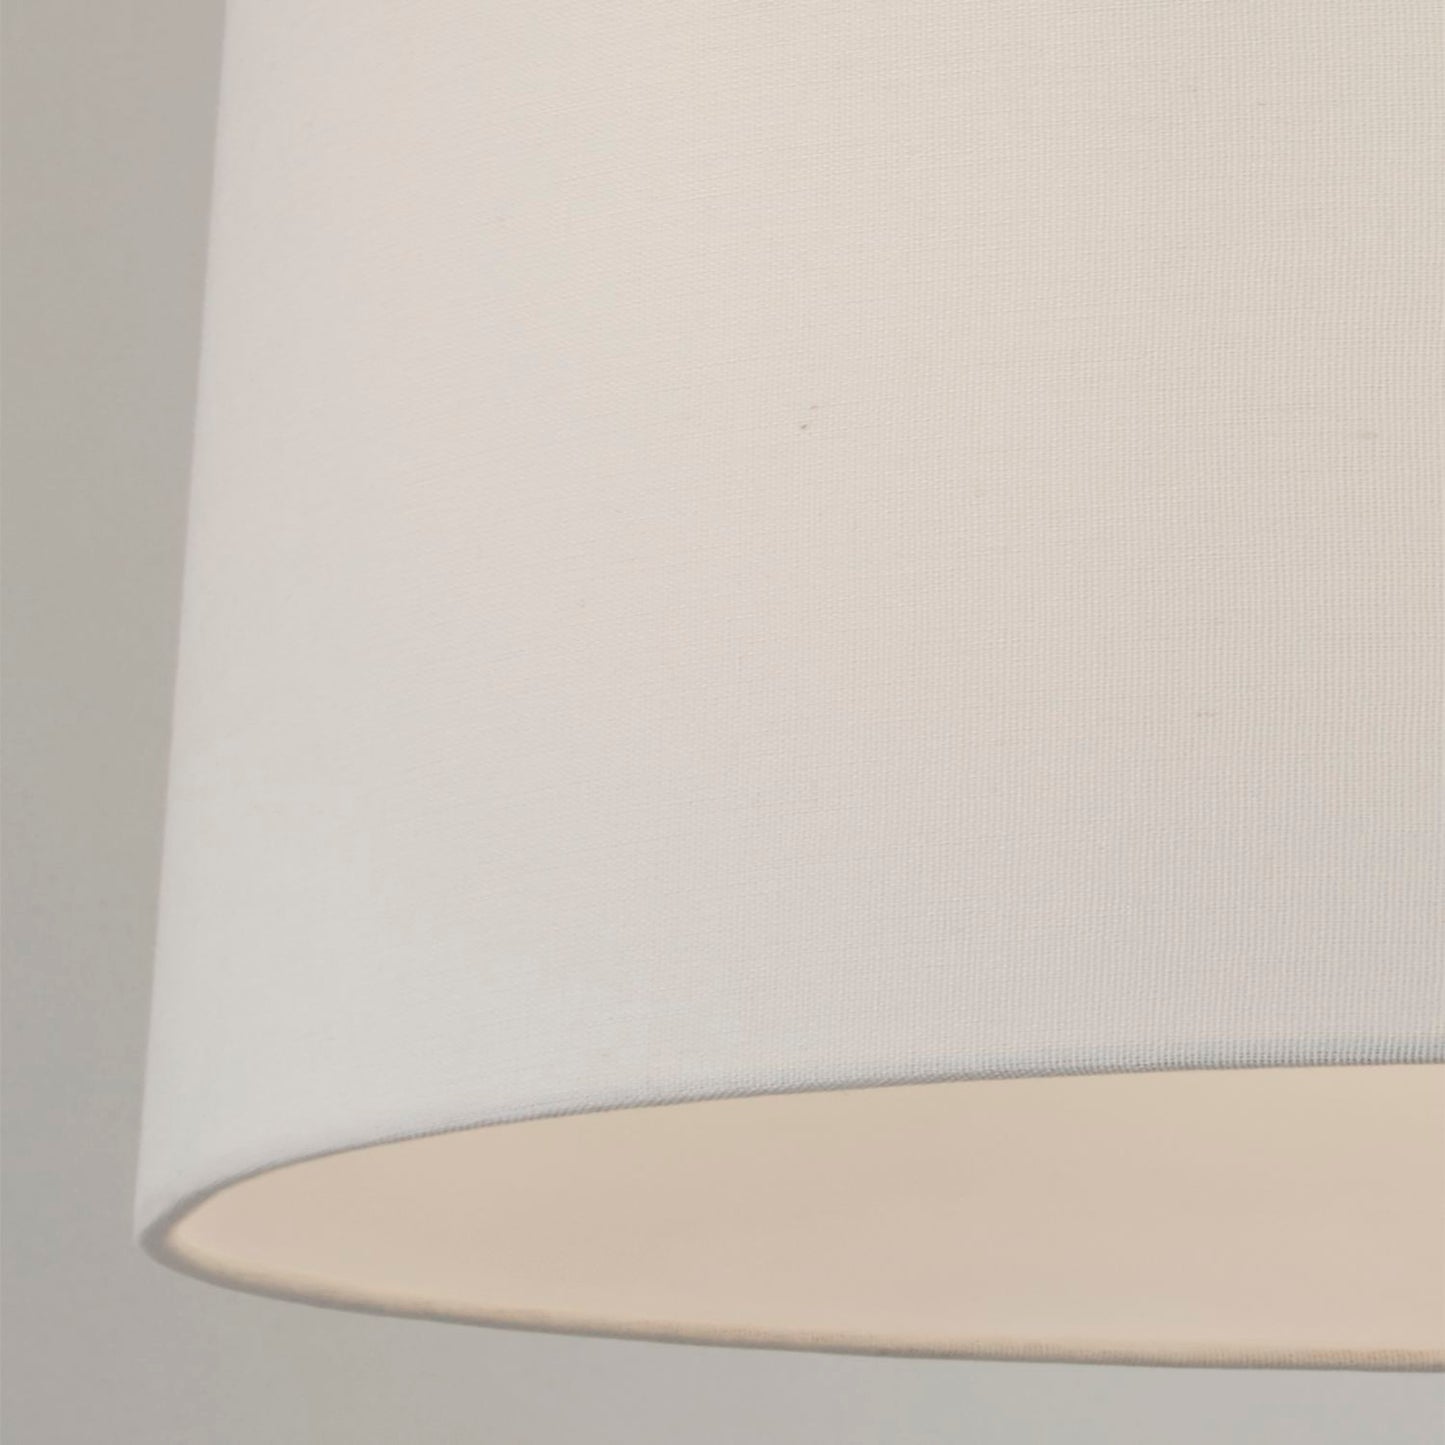 Ivory Tapered Linen Light Shade (30cm)